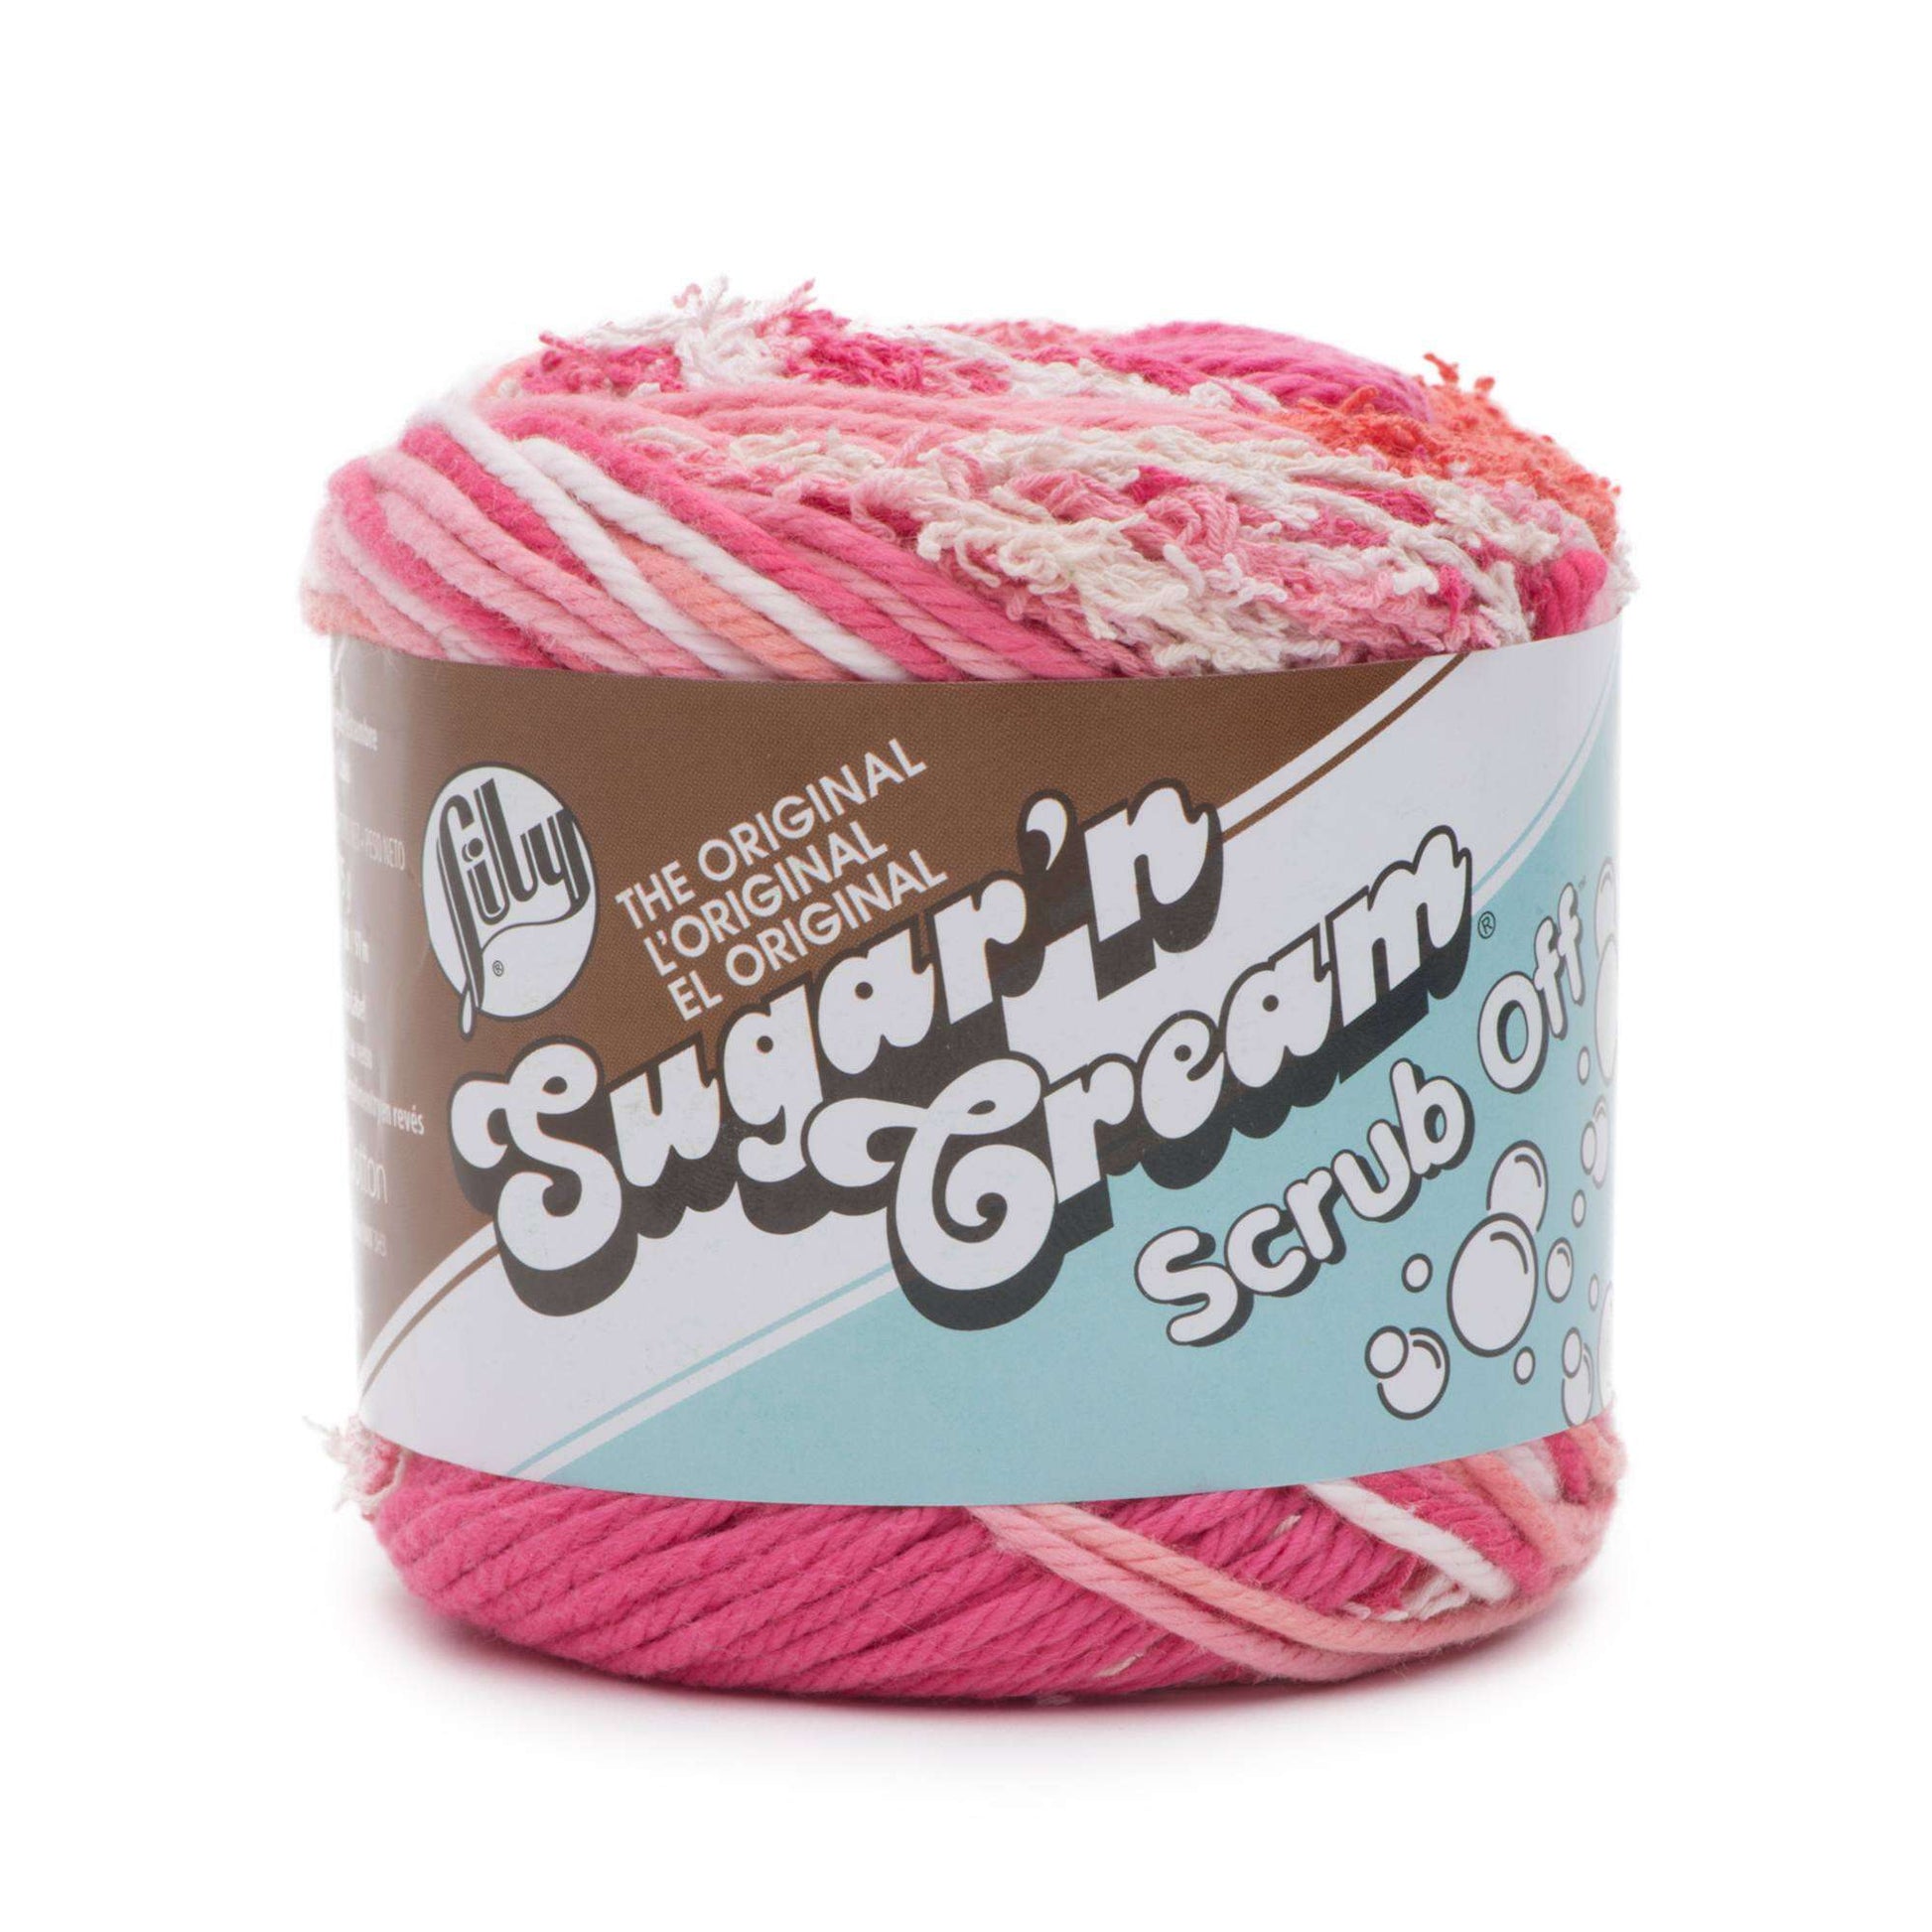 Lily Sugar'n Cream Scrub Off Yarn - Discontinued Energetic Pink